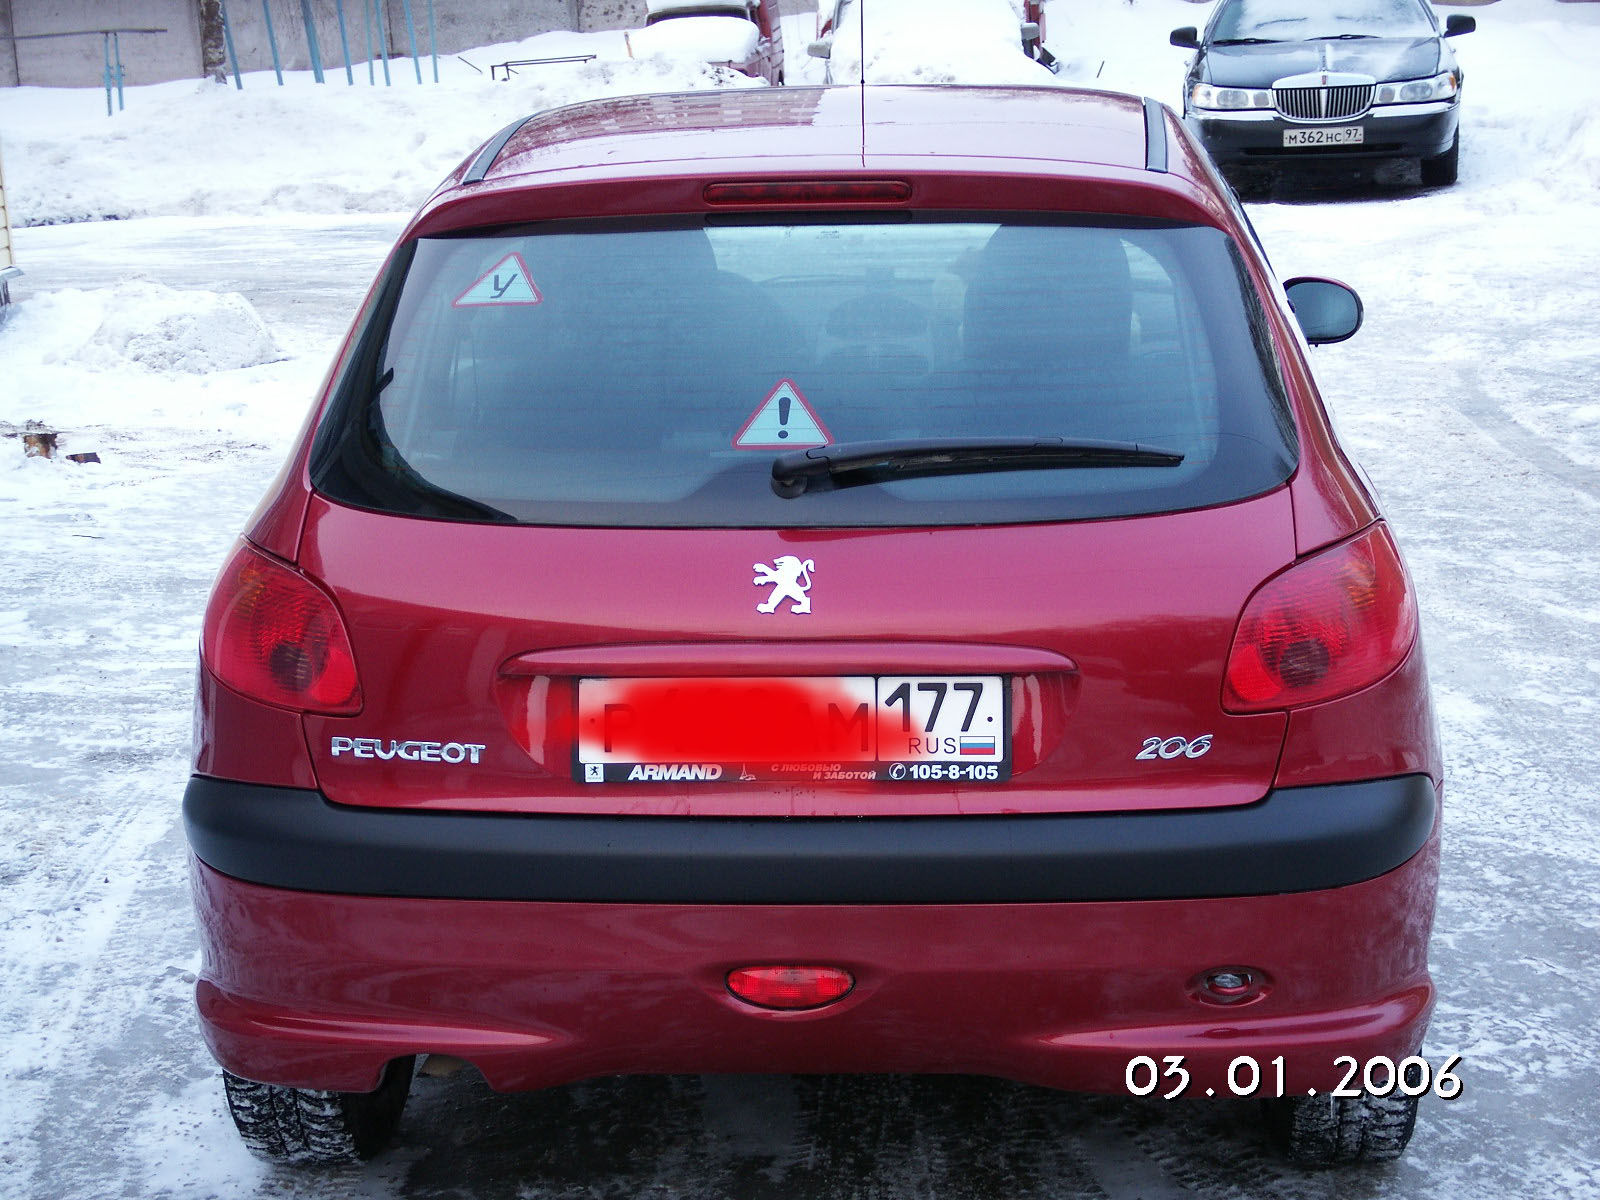 2004 Peugeot 206